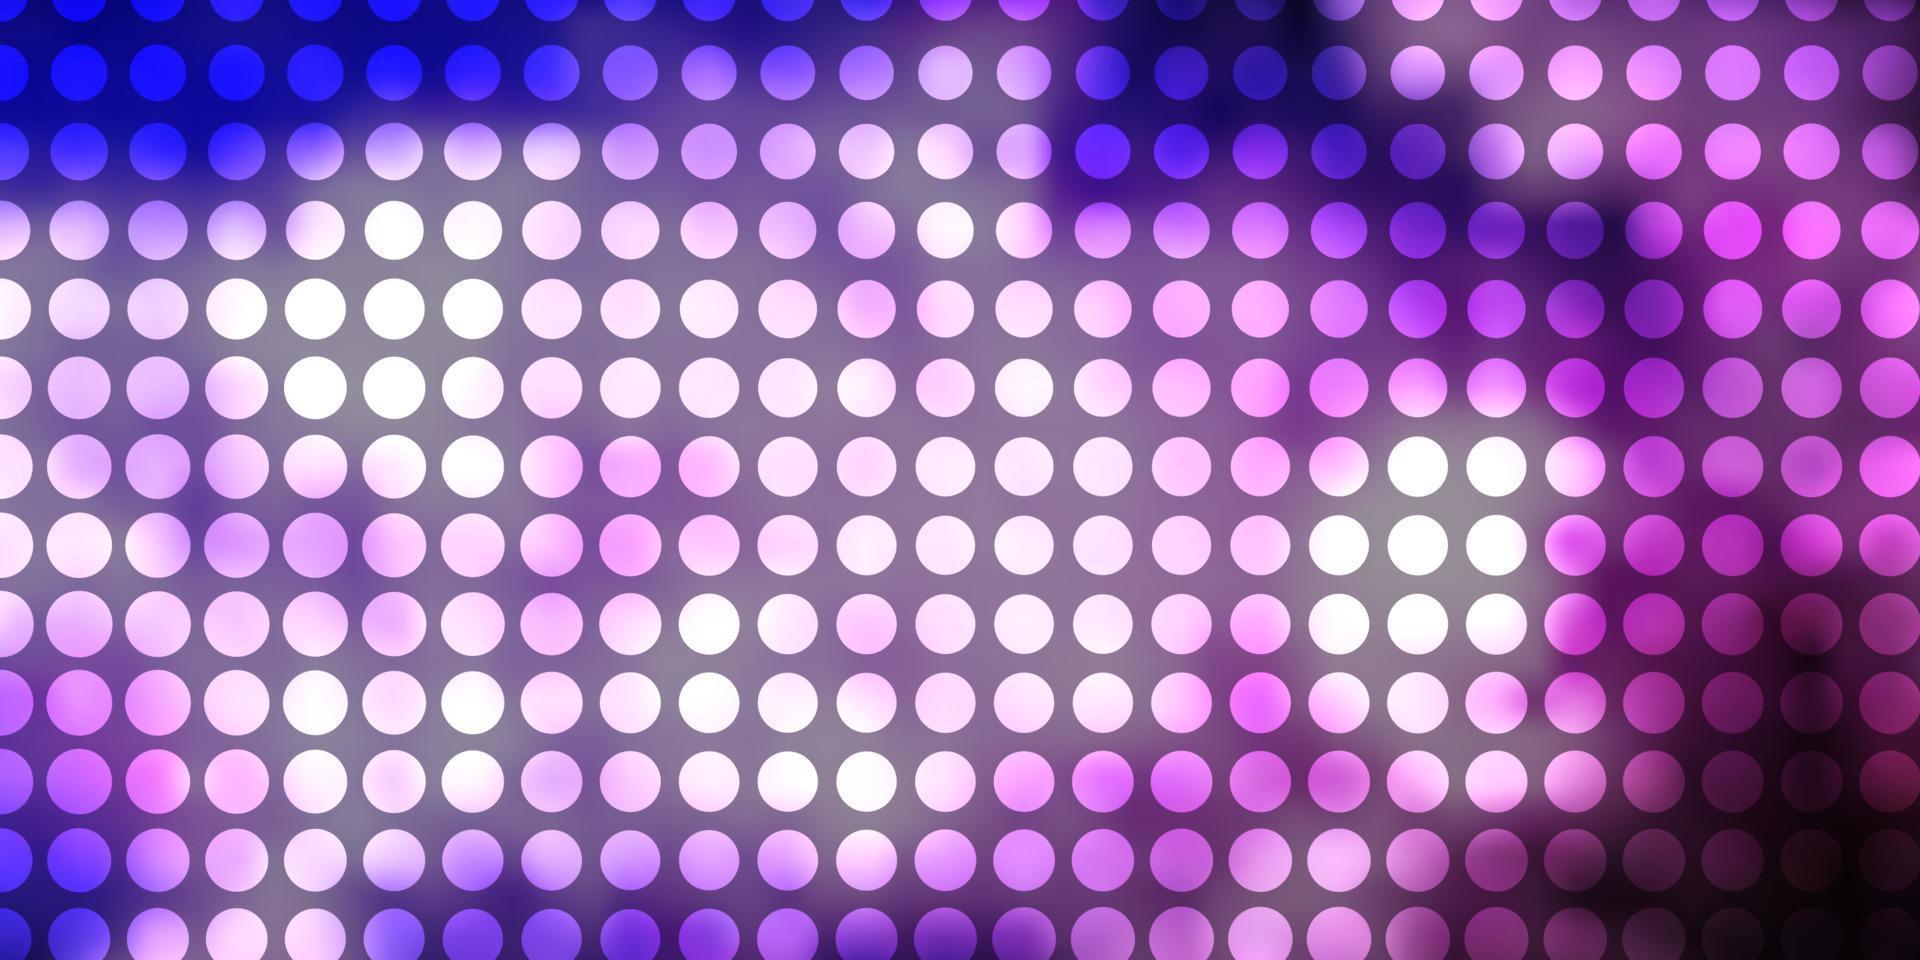 telón de fondo de vector púrpura claro con círculos.